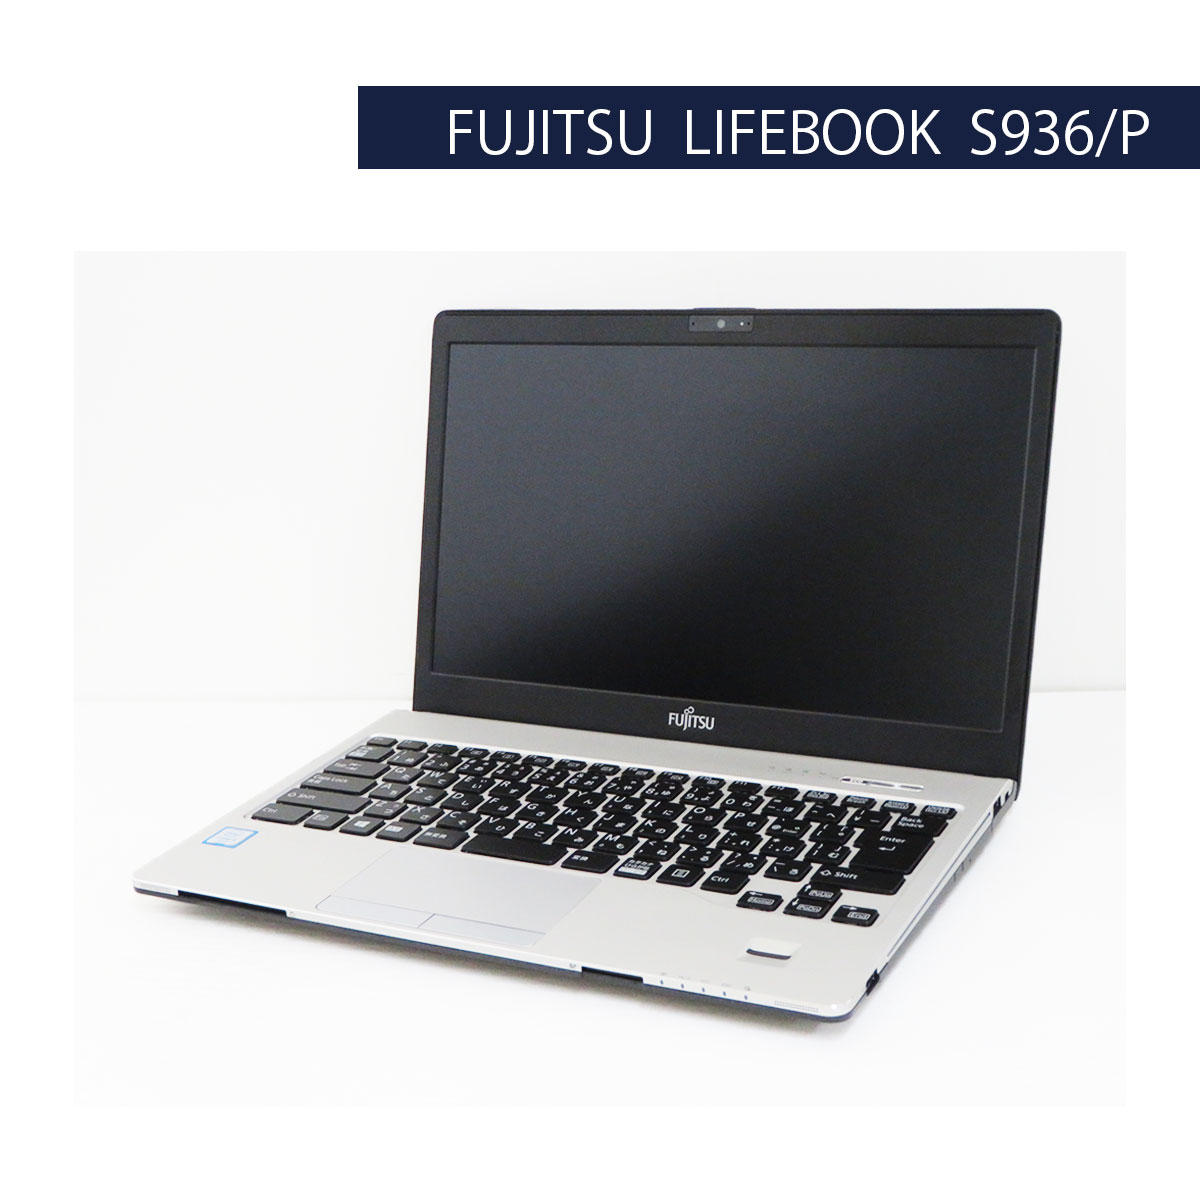 中古パソコンショップ 0799.jp / SSD搭載 FUJITSU LIFEBOOK S936/P ...